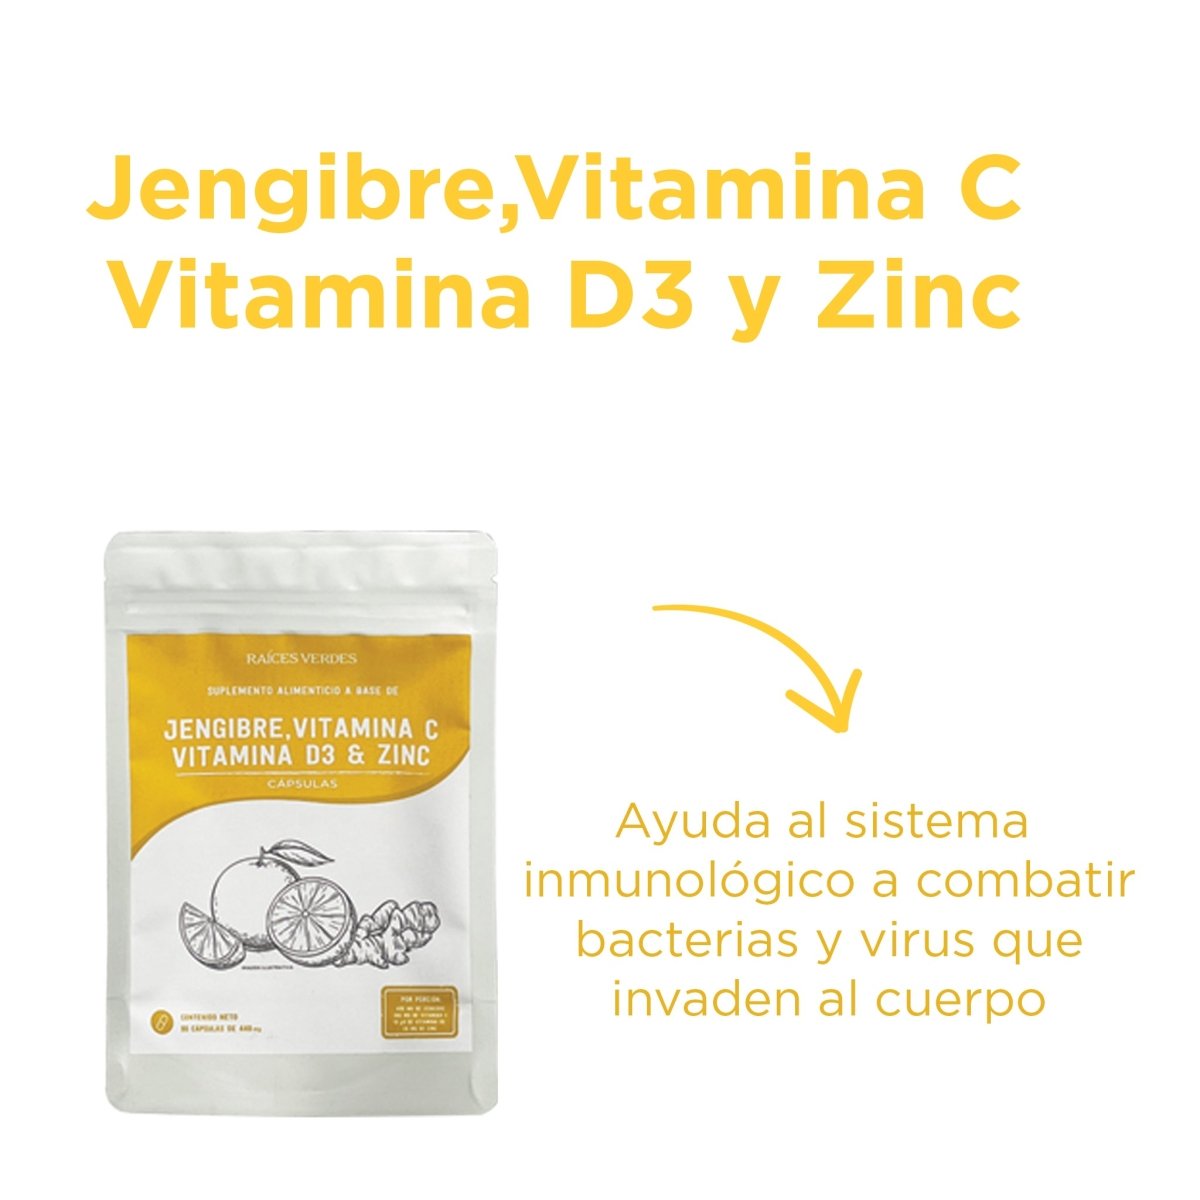 Jengibre, Vitamina C, Vitamina D3 y Zinc - Good Express mx